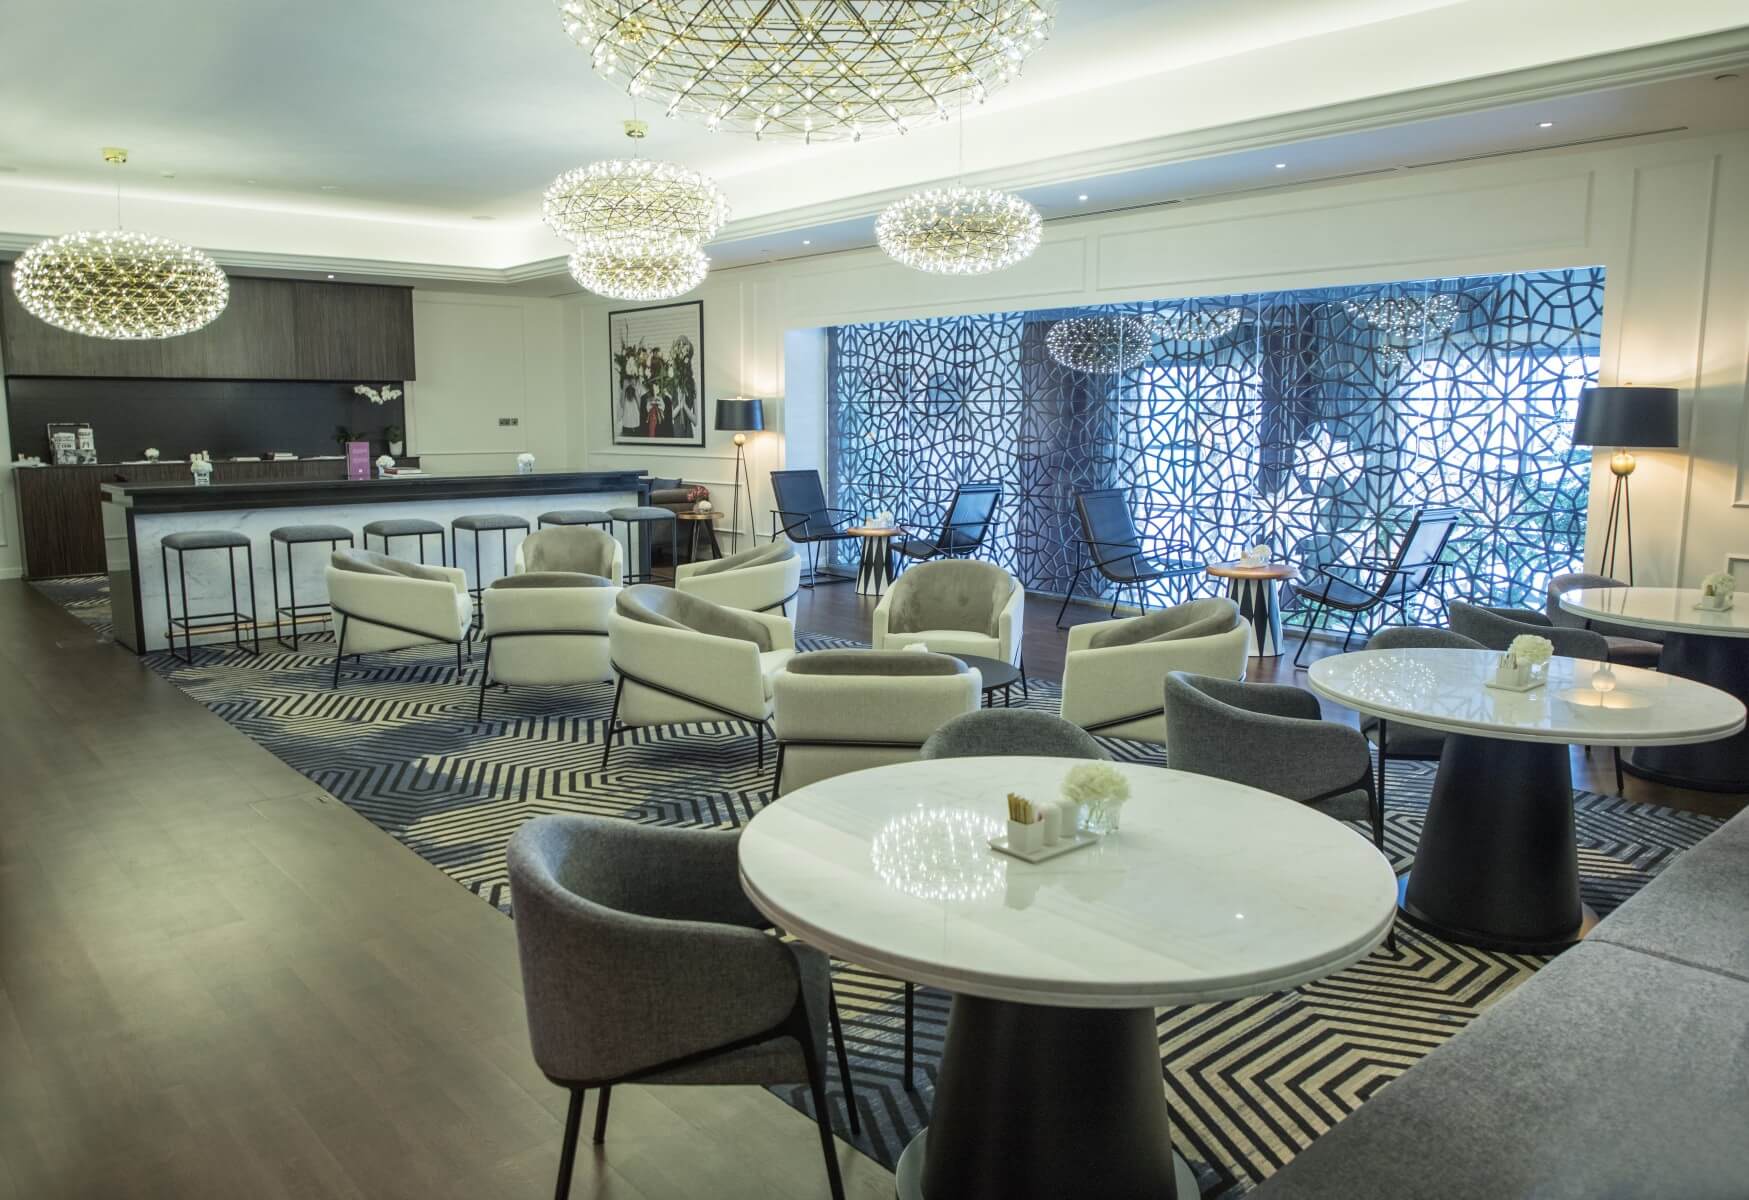 Sofitel Dubai Jumeirah Beach Club Lounge Seating